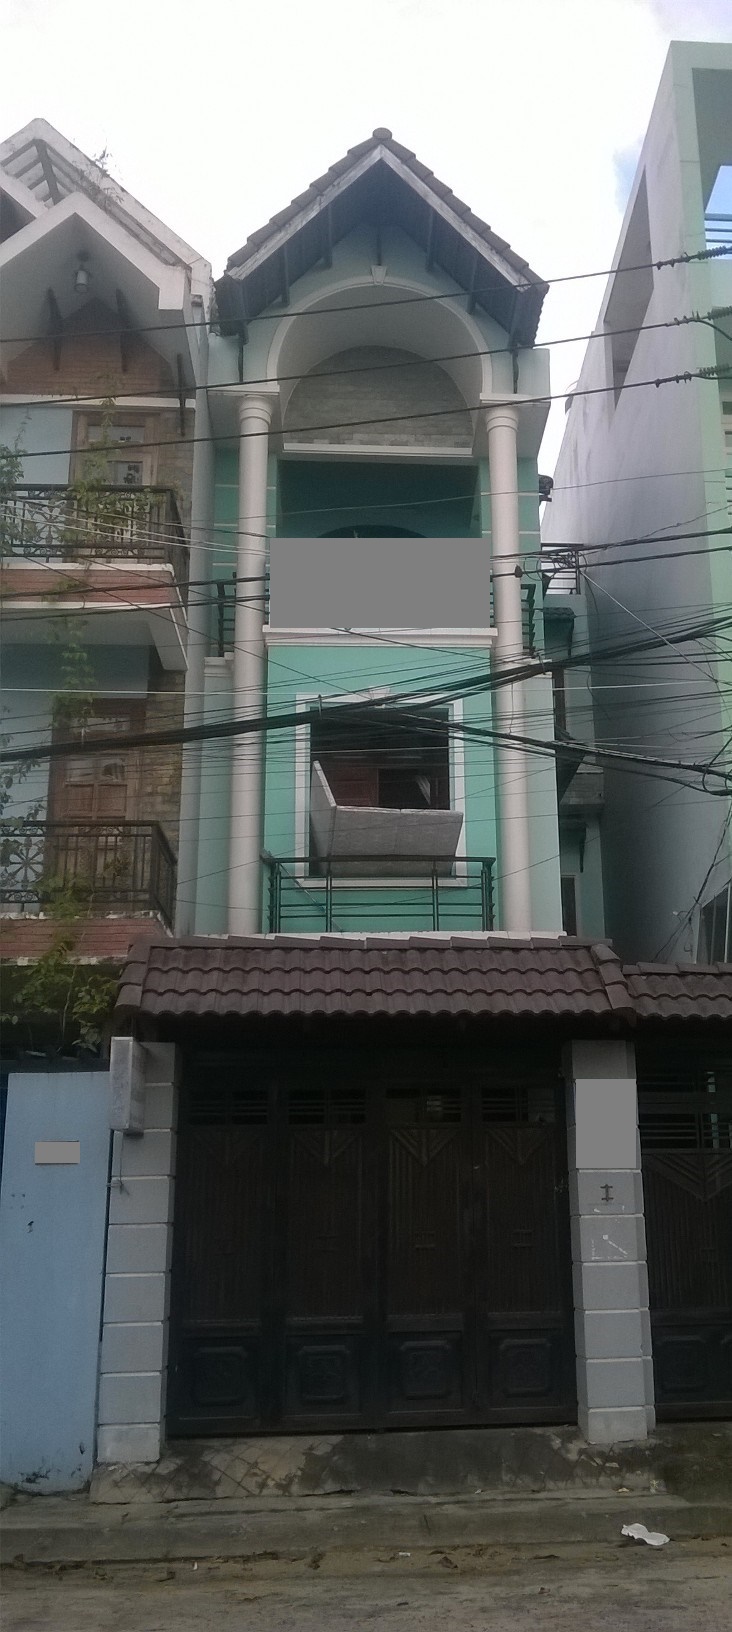 Cho thuê nhà đường Nguyễn Tư Nghiêm, Q. 2, DT 210m2, gồm 1 trệt, 2 lầu, giá rẻ. LH 0907706348 Liên